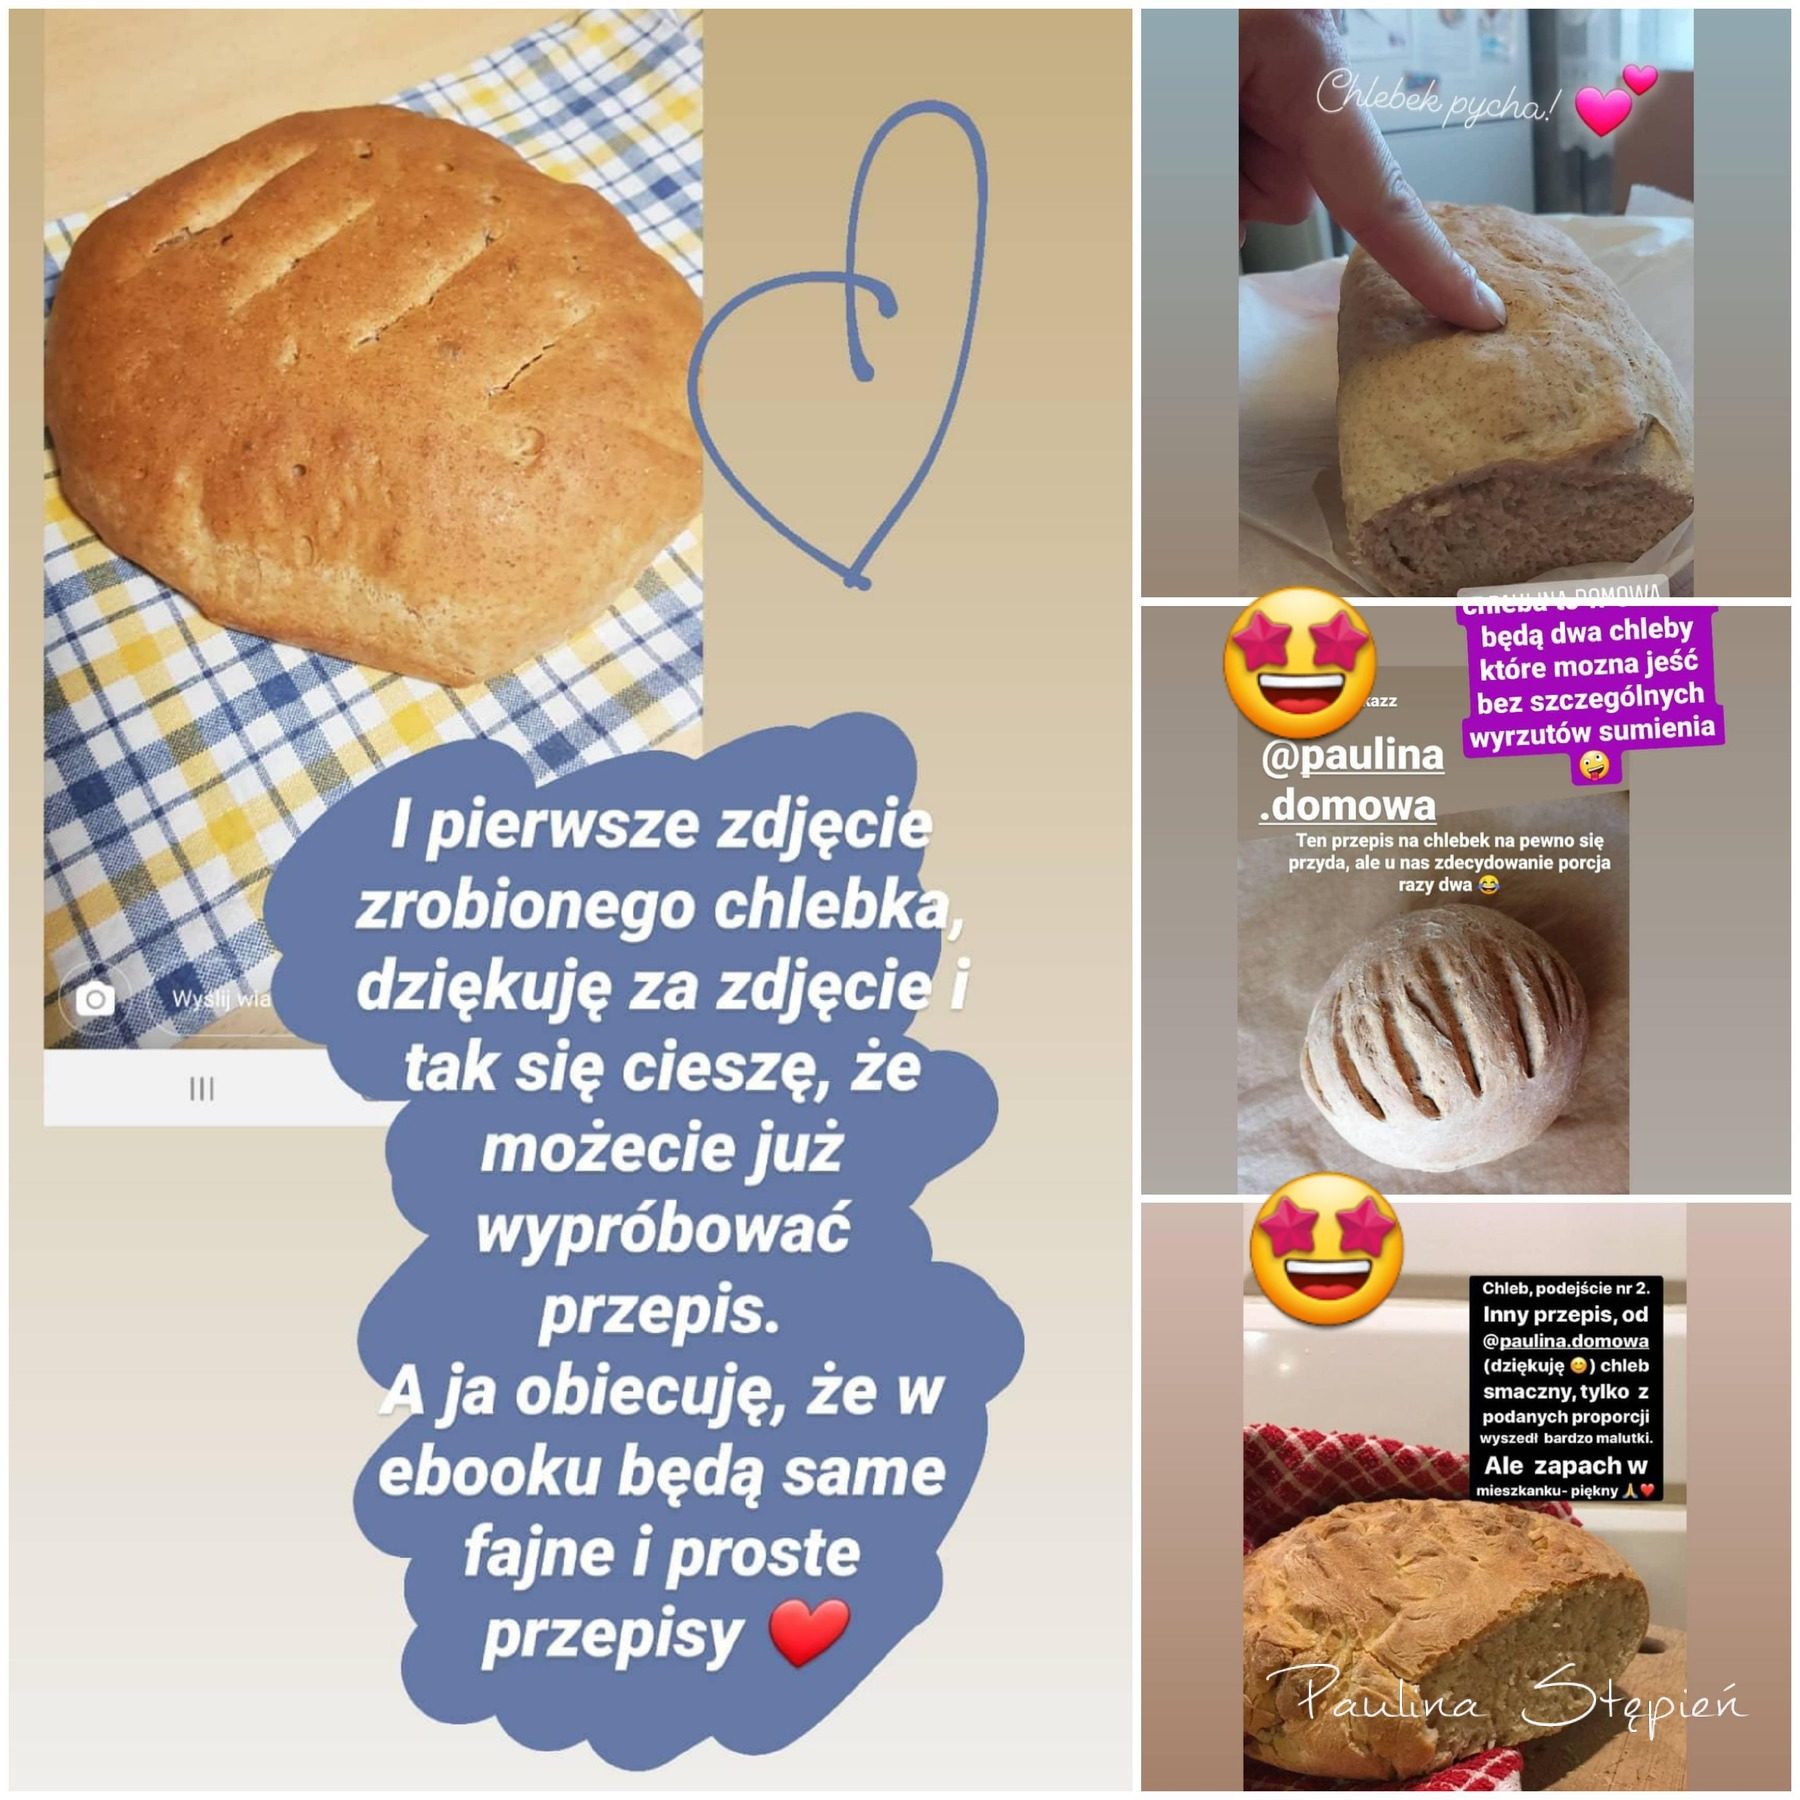 Zdjęcia chlebów nadesłane przez Czytelników